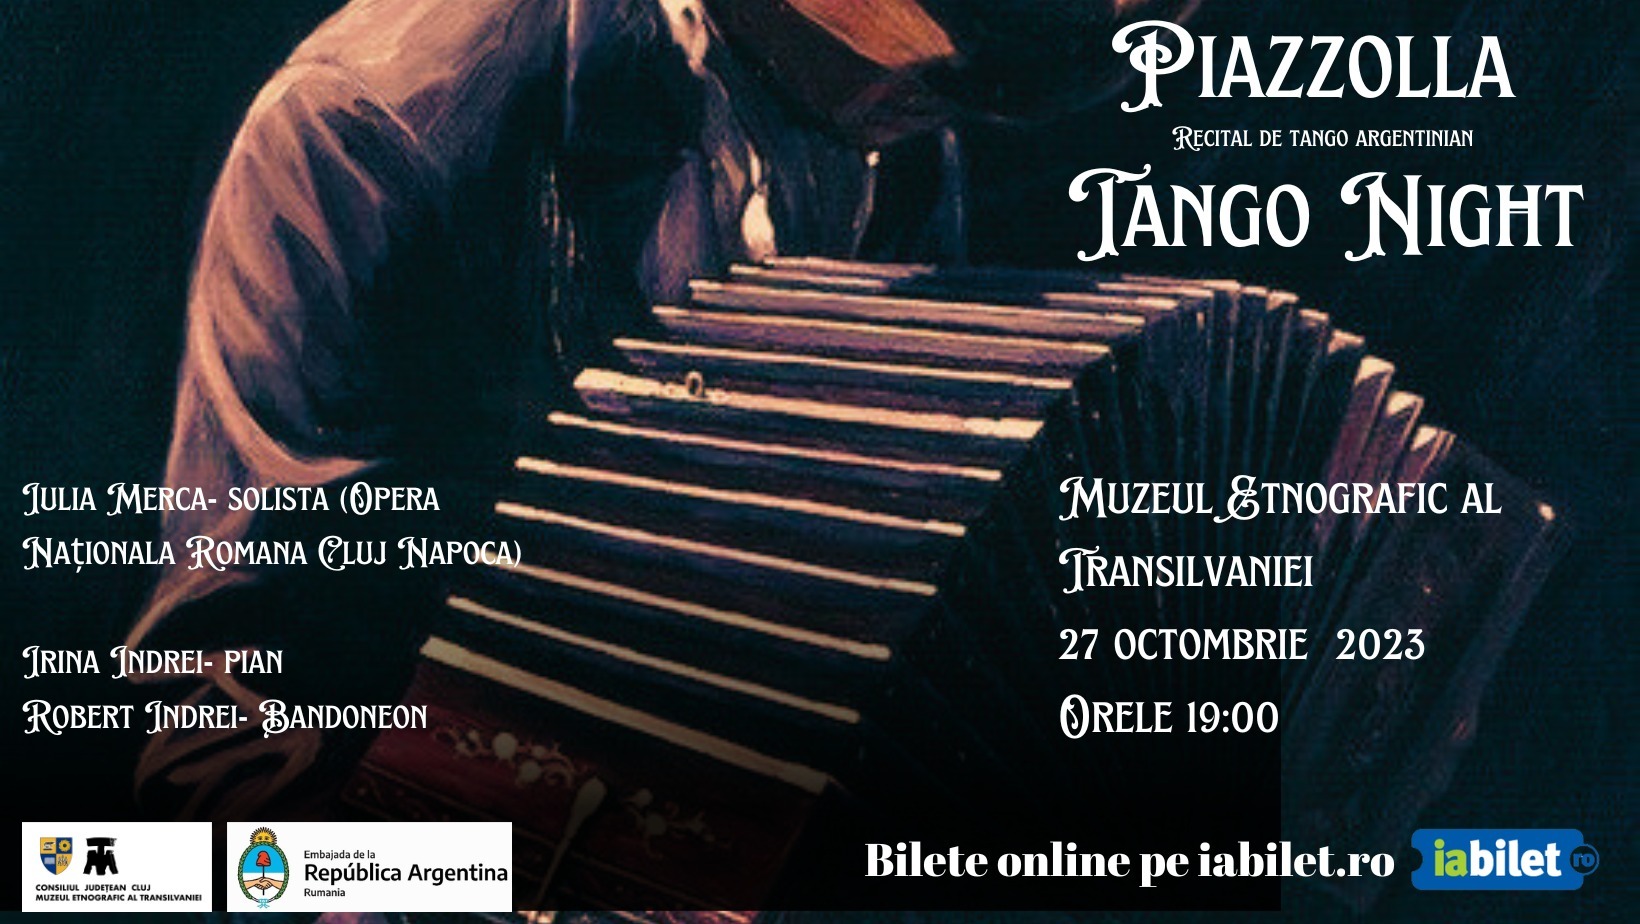 Piazzolla Tango Night